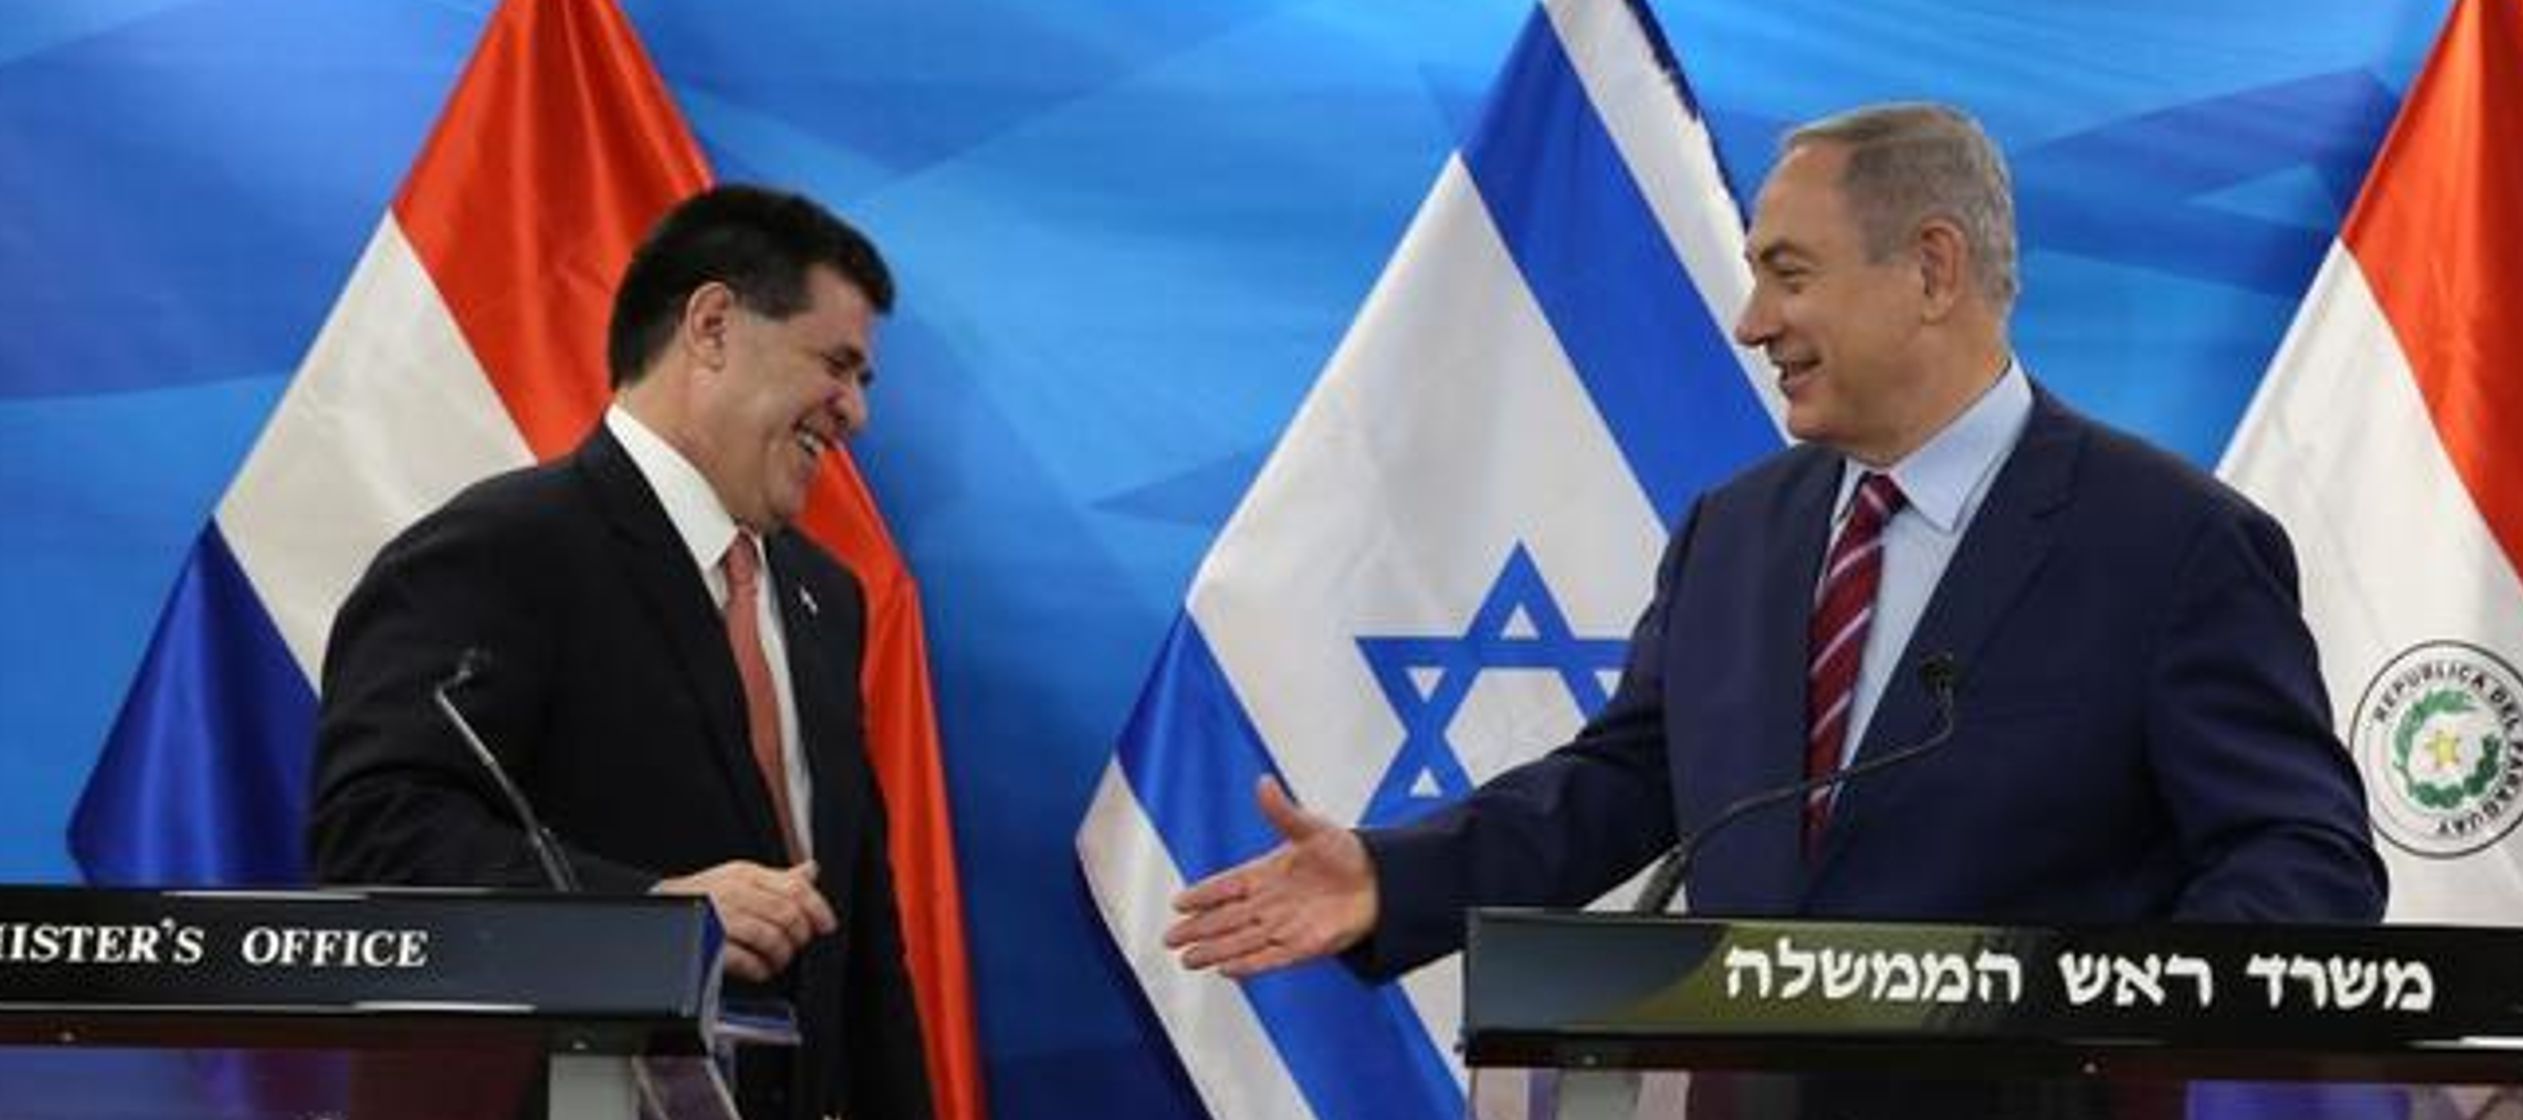 La reacción del Gobierno israelí no se ha hecho esperar. "Israel considera muy...